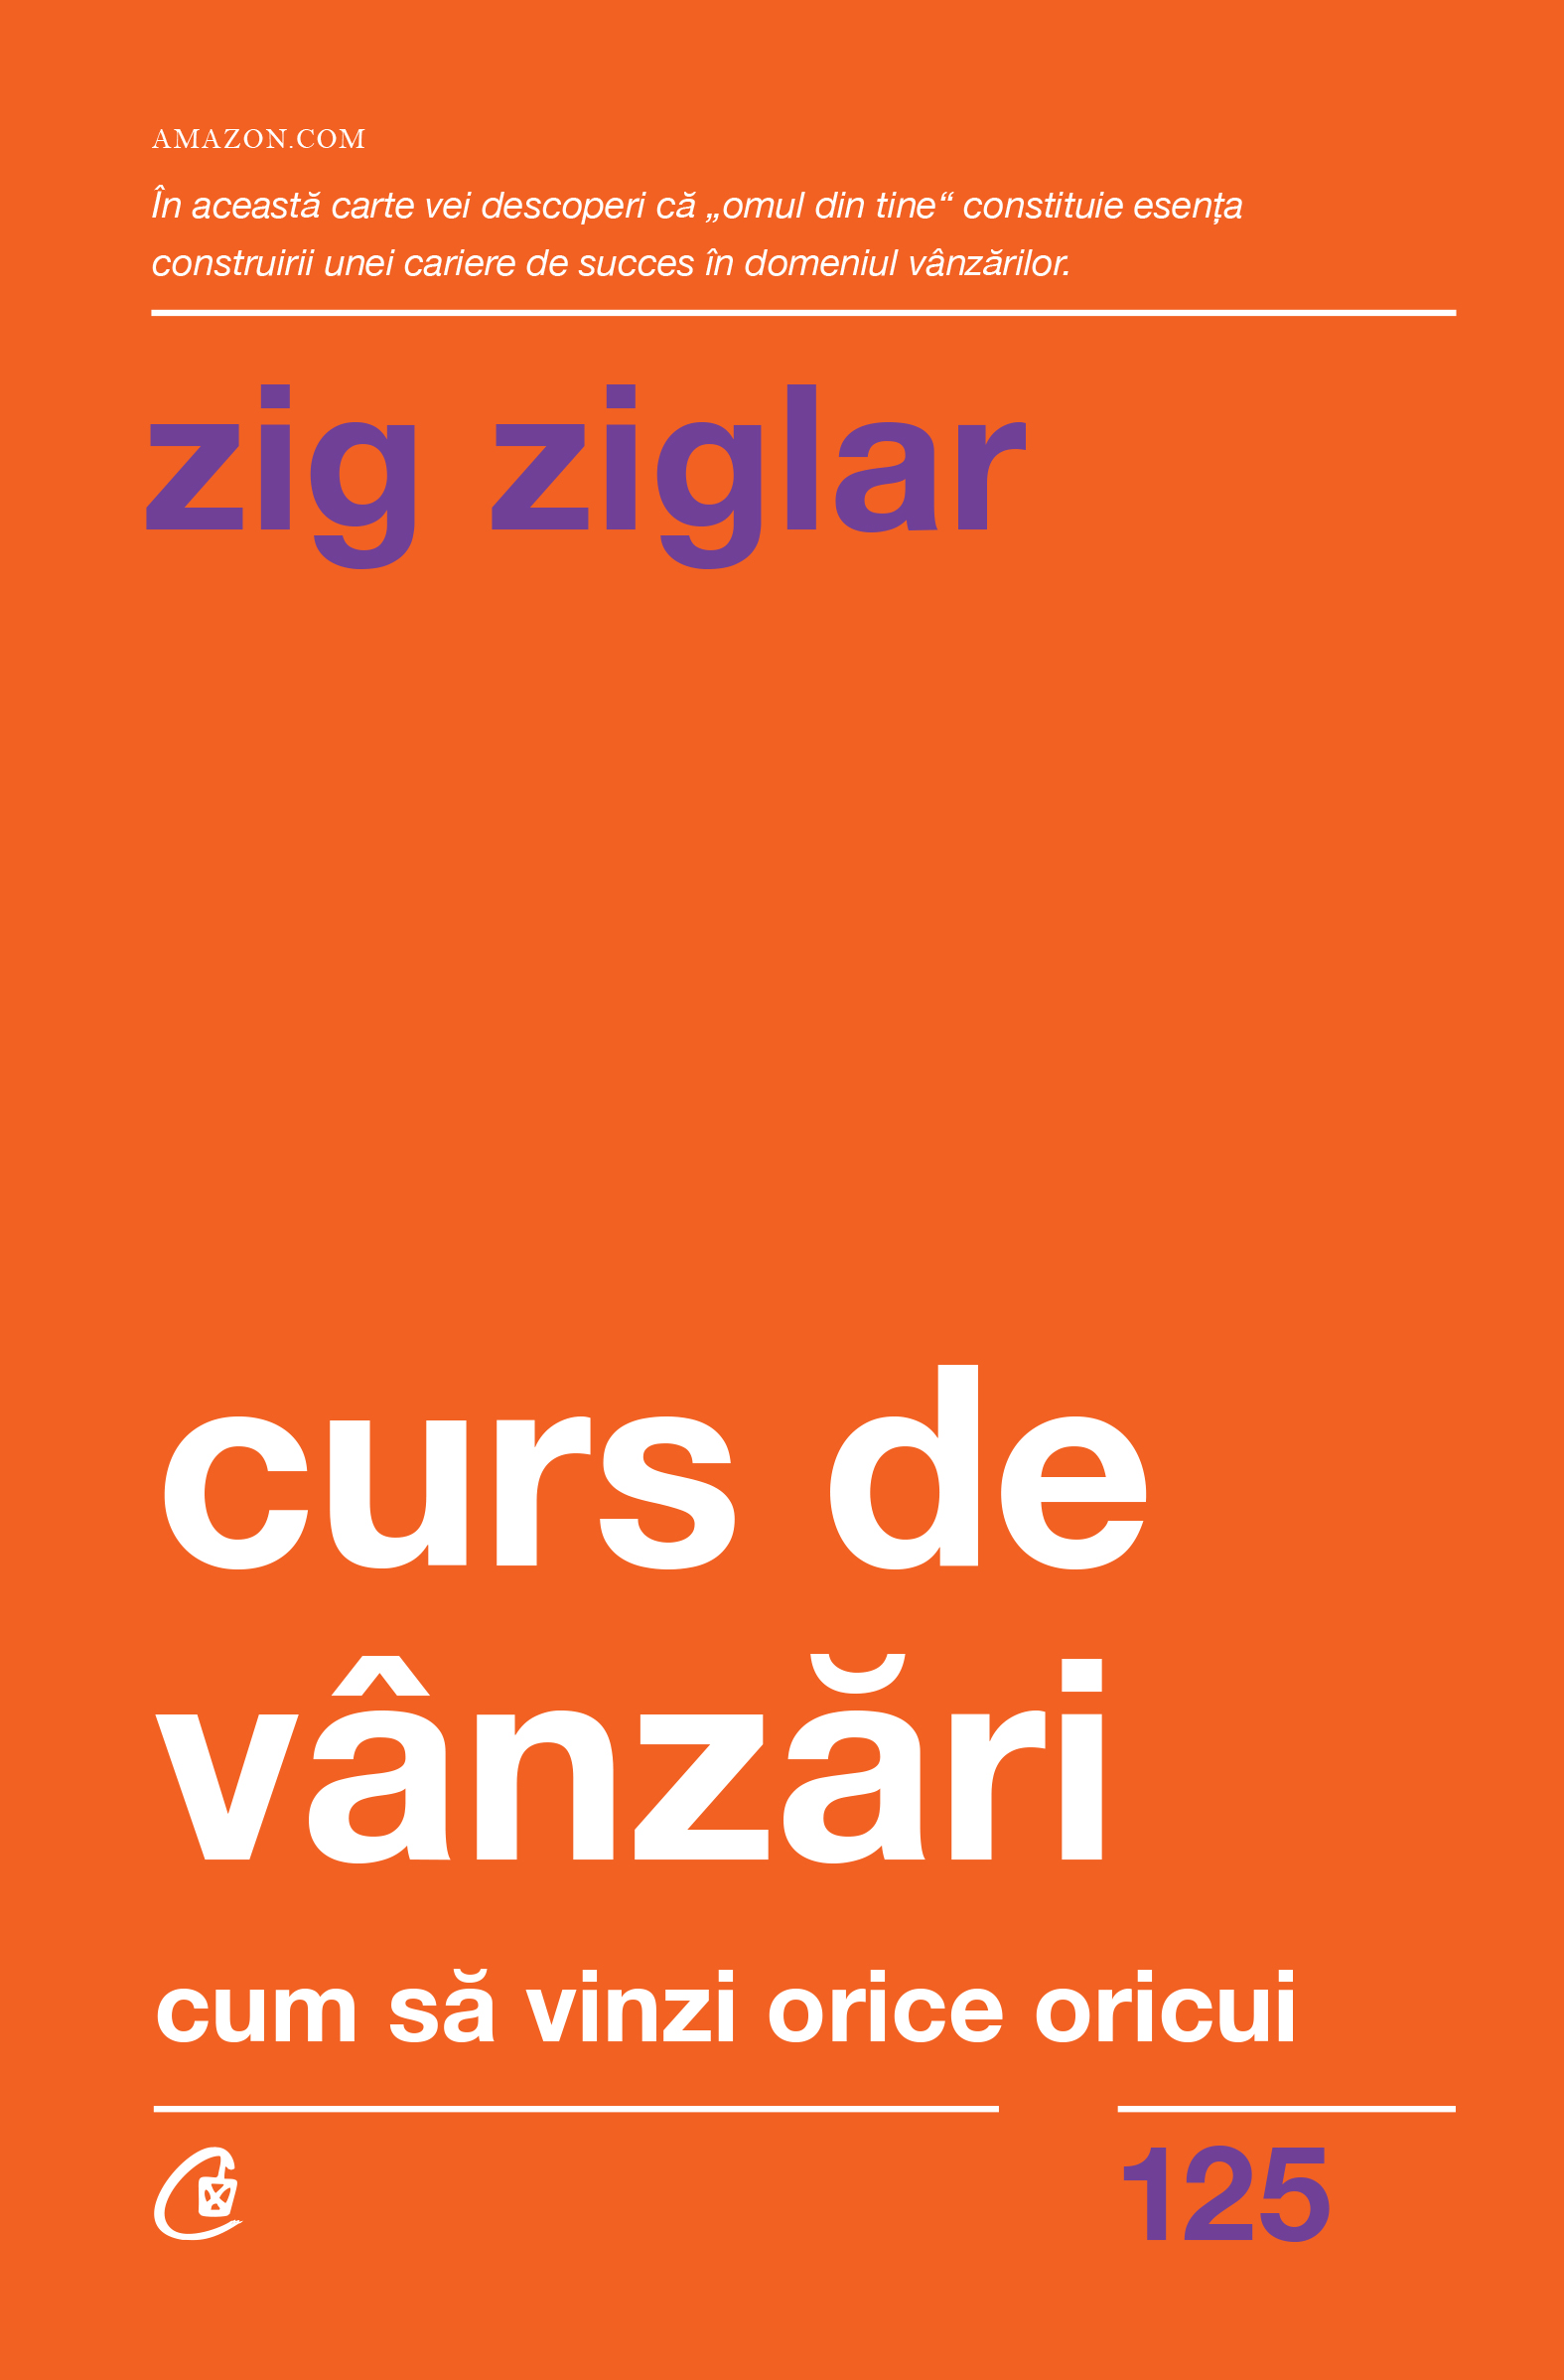 Curs de vanzari | Zig Ziglar carturesti.ro Business si economie